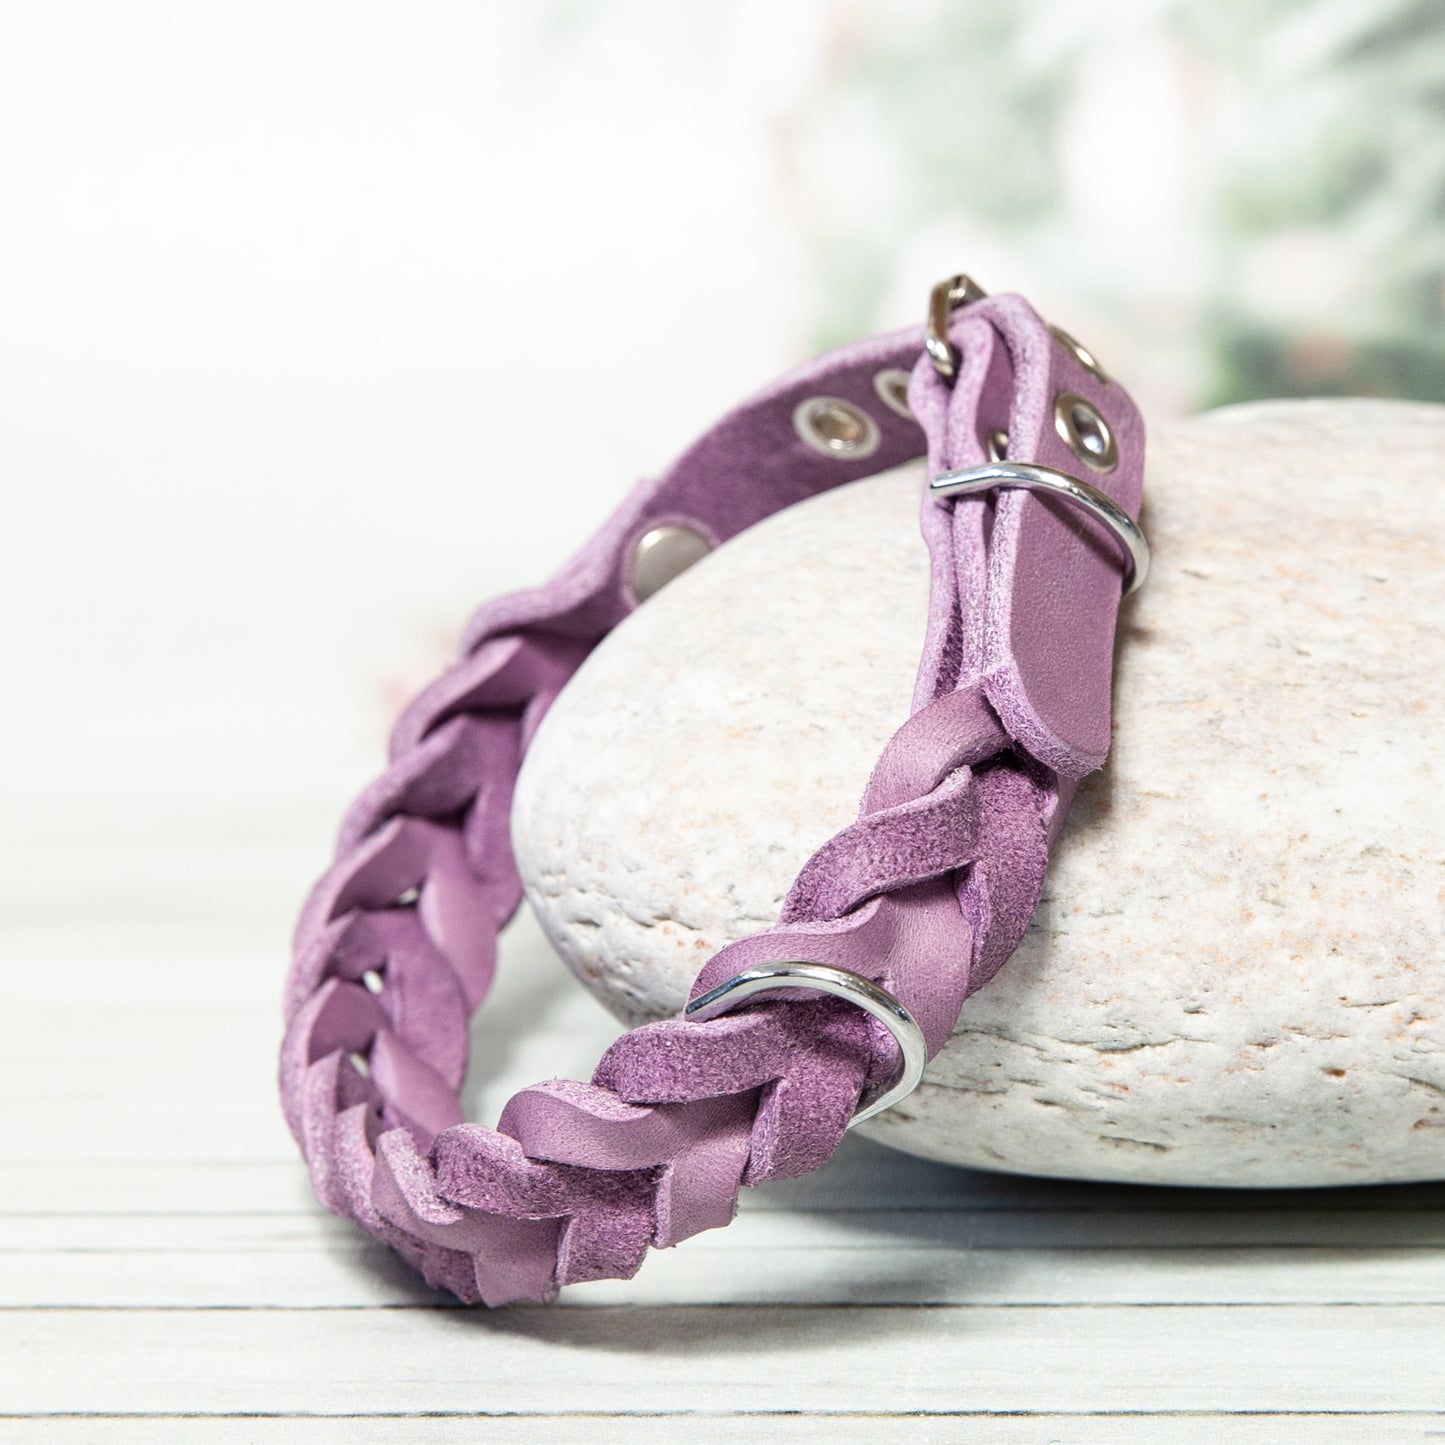 Halsband MILA aus Leder. Hundehalsband aus geflochtenem Leder in der Farbe Lavendel. Lederhalsband für Fellnasen.